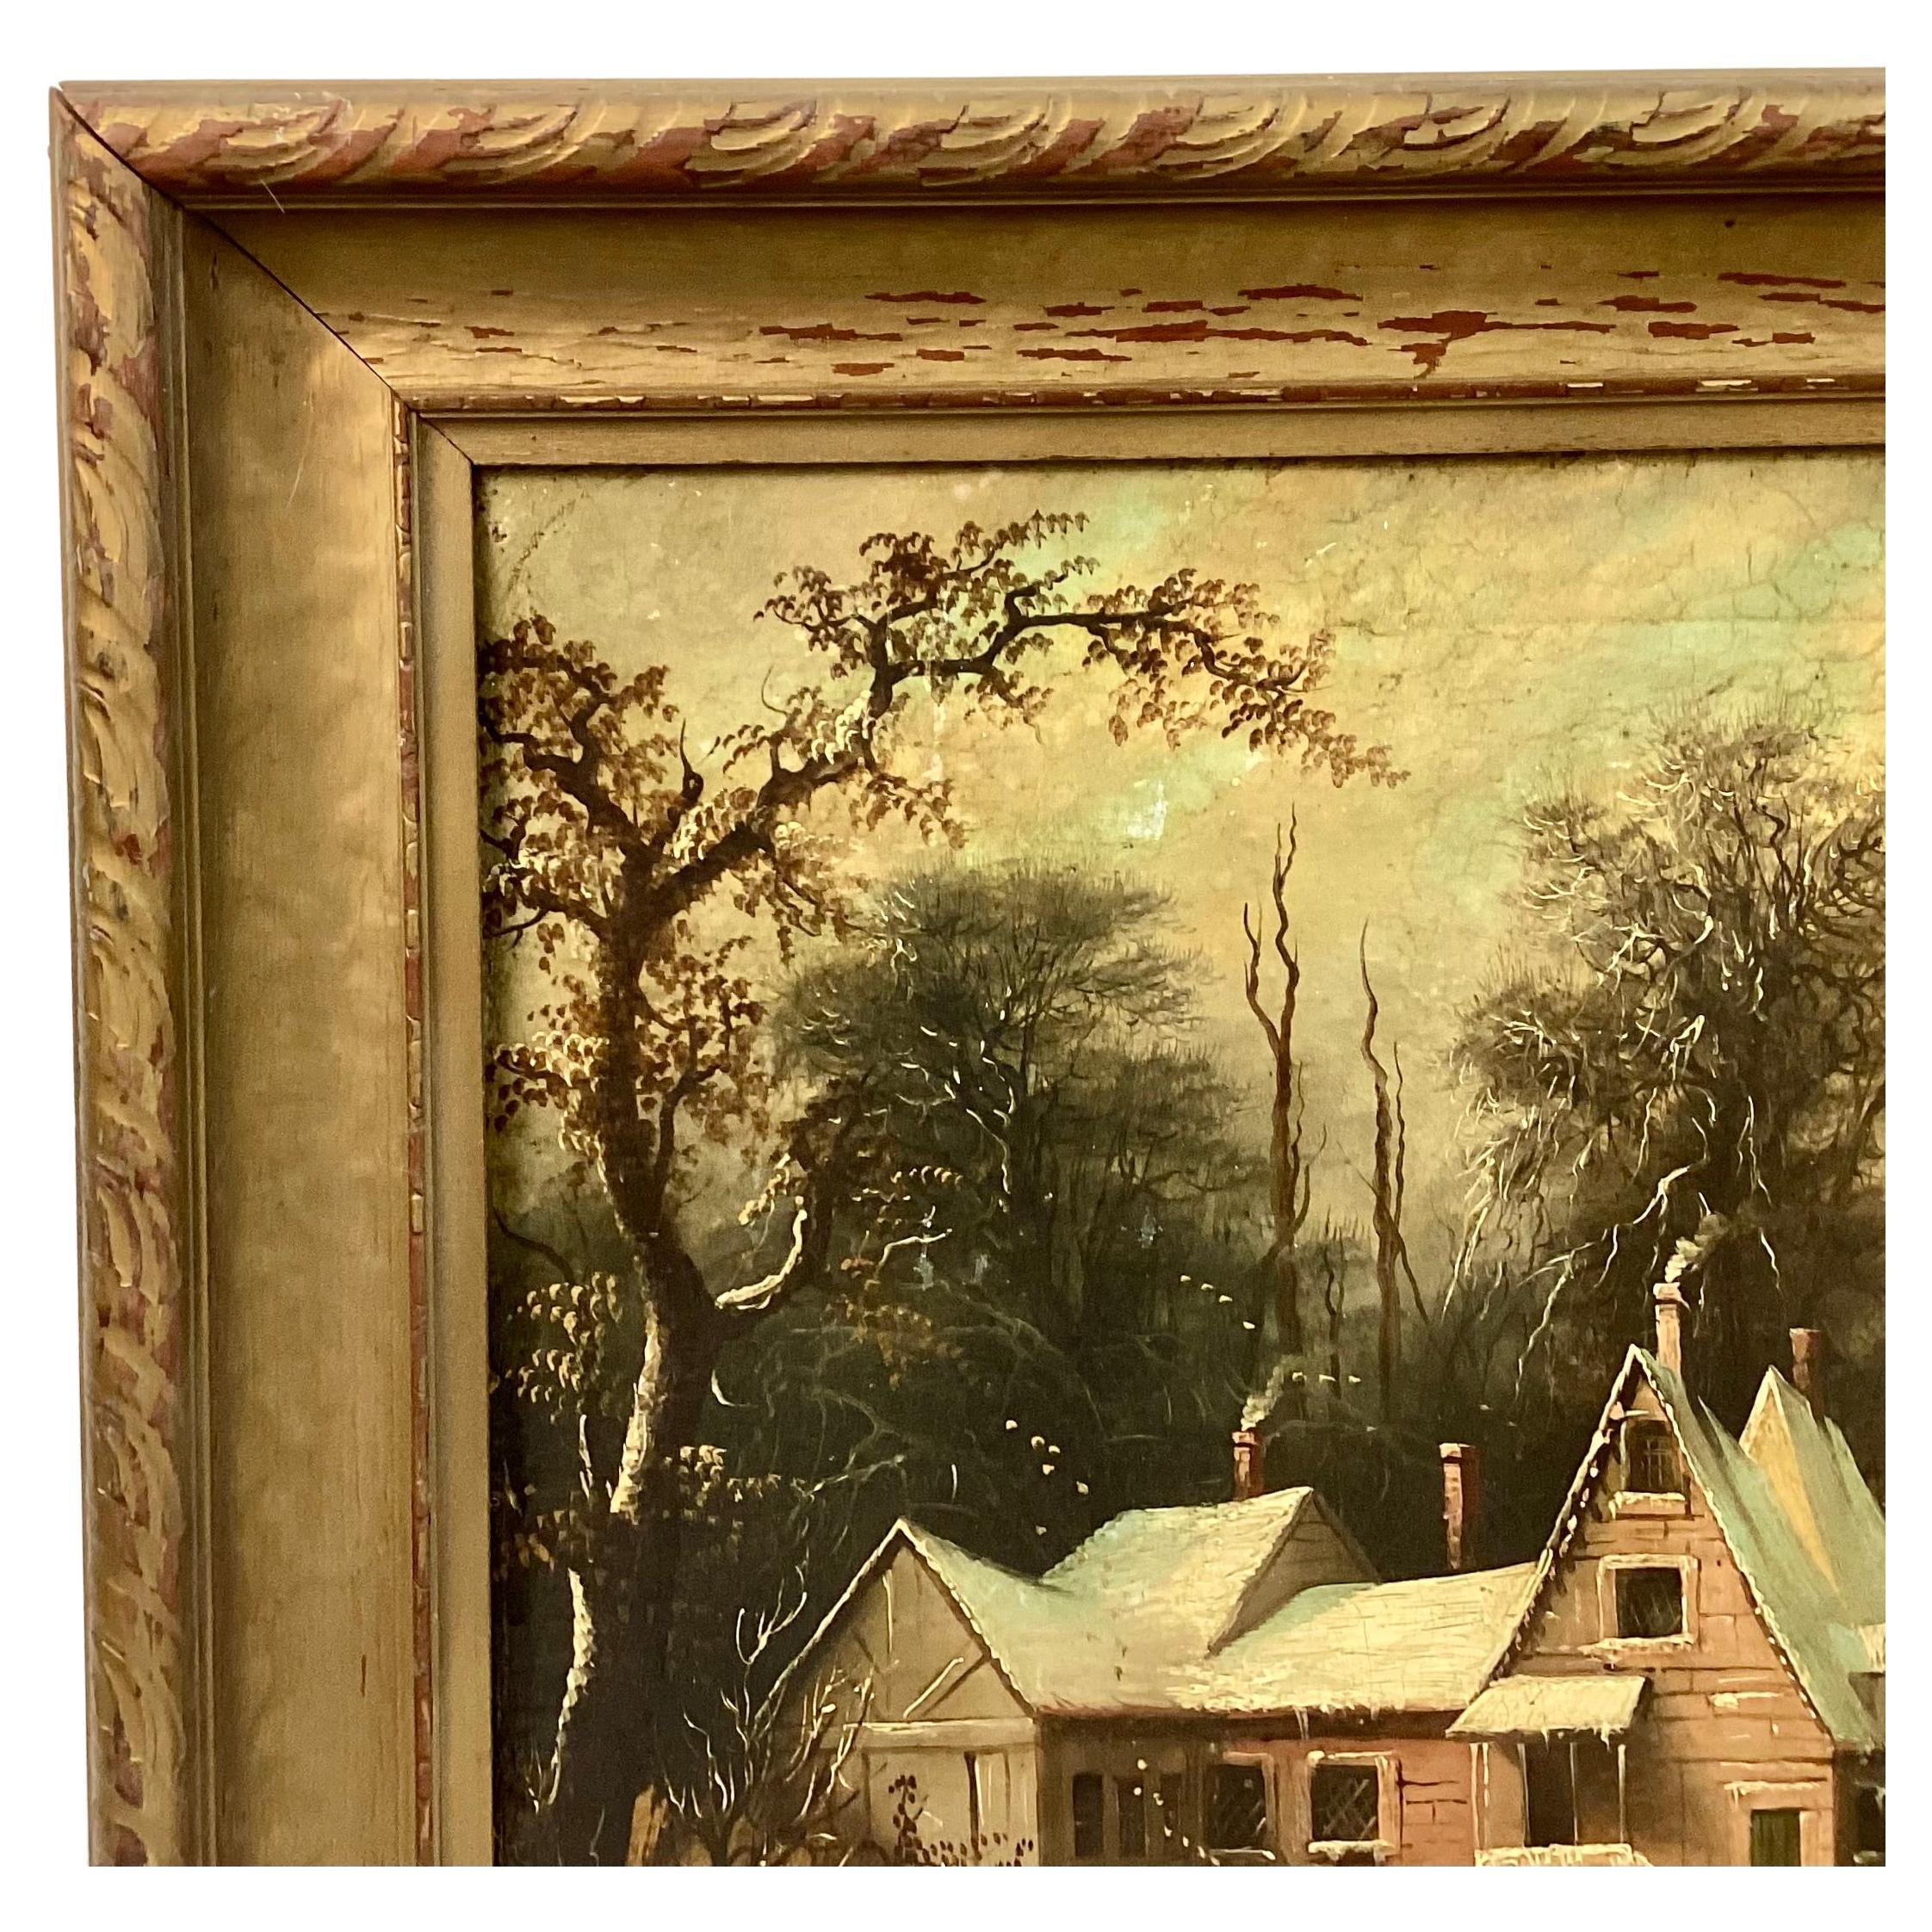 Paysage d'hiver hollandais du 19e siècle, peinture à l'huile sur carton d'artiste, encadrée. La peinture représente une scène d'extérieur avec des personnages marchant près d'une maison par une journée enneigée, avec un pont et un moulin à vent à